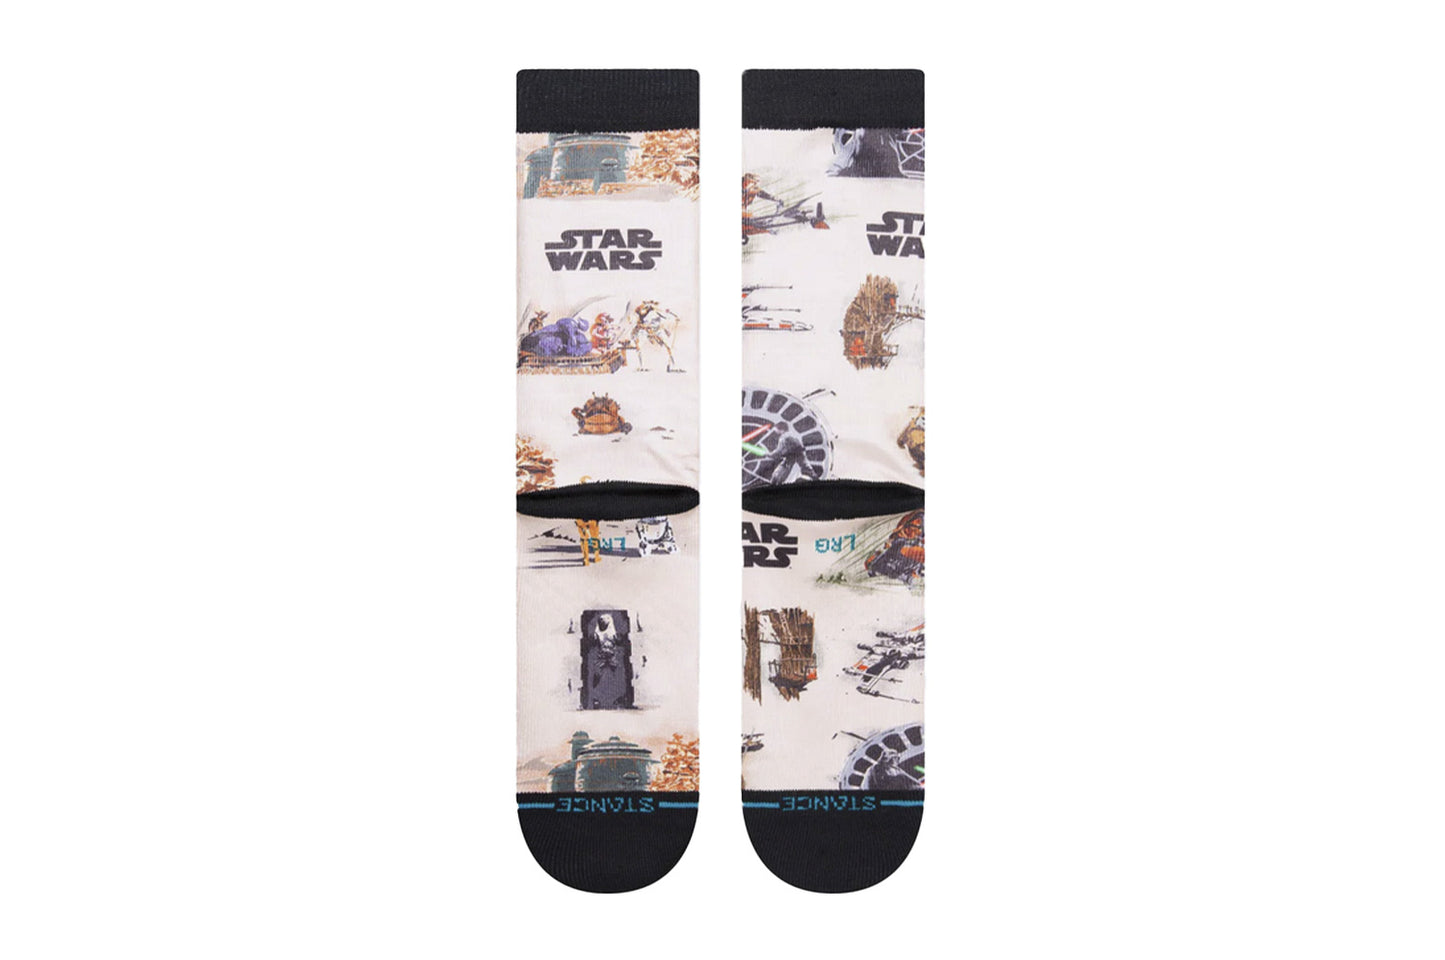 ROTJ Star Wars Crew Socken